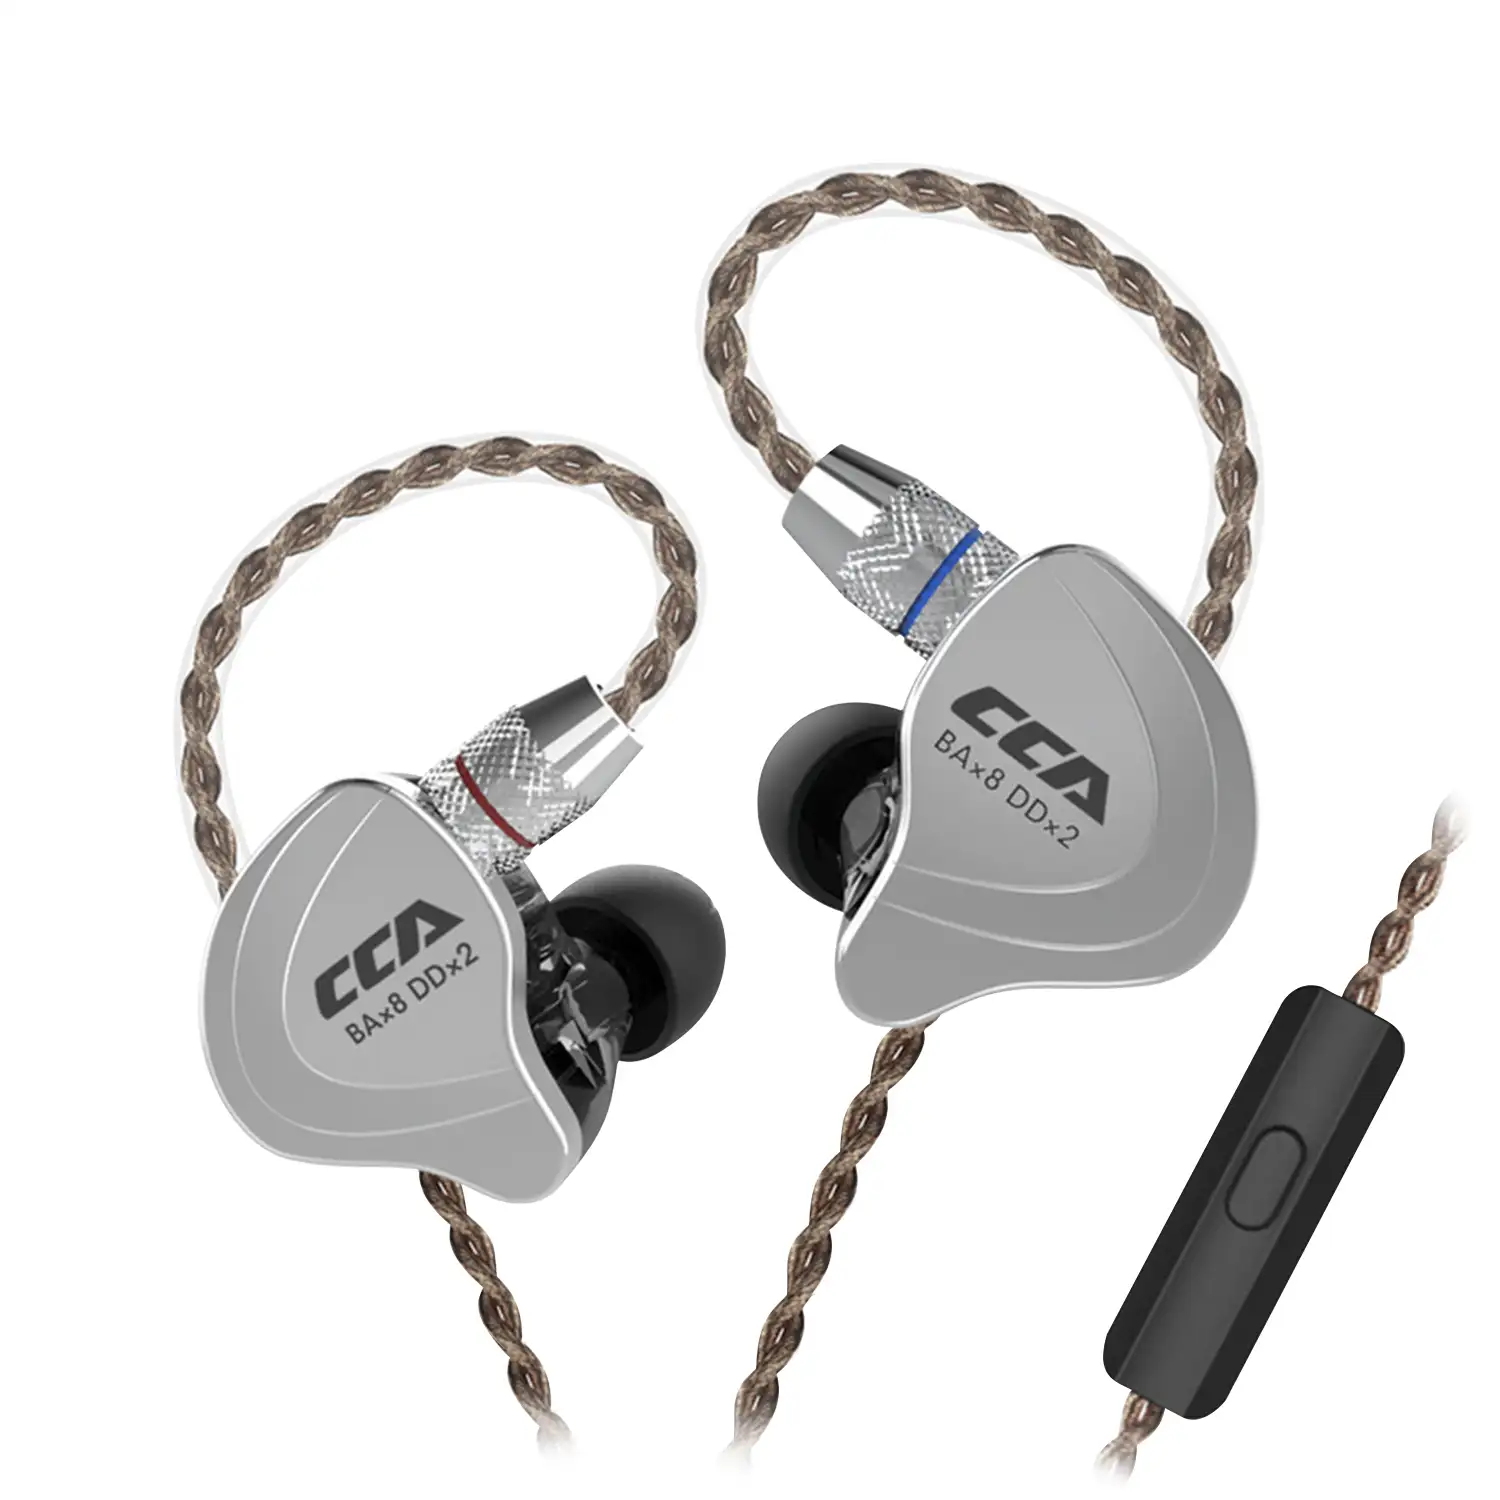 Auriculares híbridos in-ear CCA C10 de alta fidelidad. 4 controladores de armadura balanceada + 1 controlador dinámico. Cable con micro, conexión jack 3,5mm.